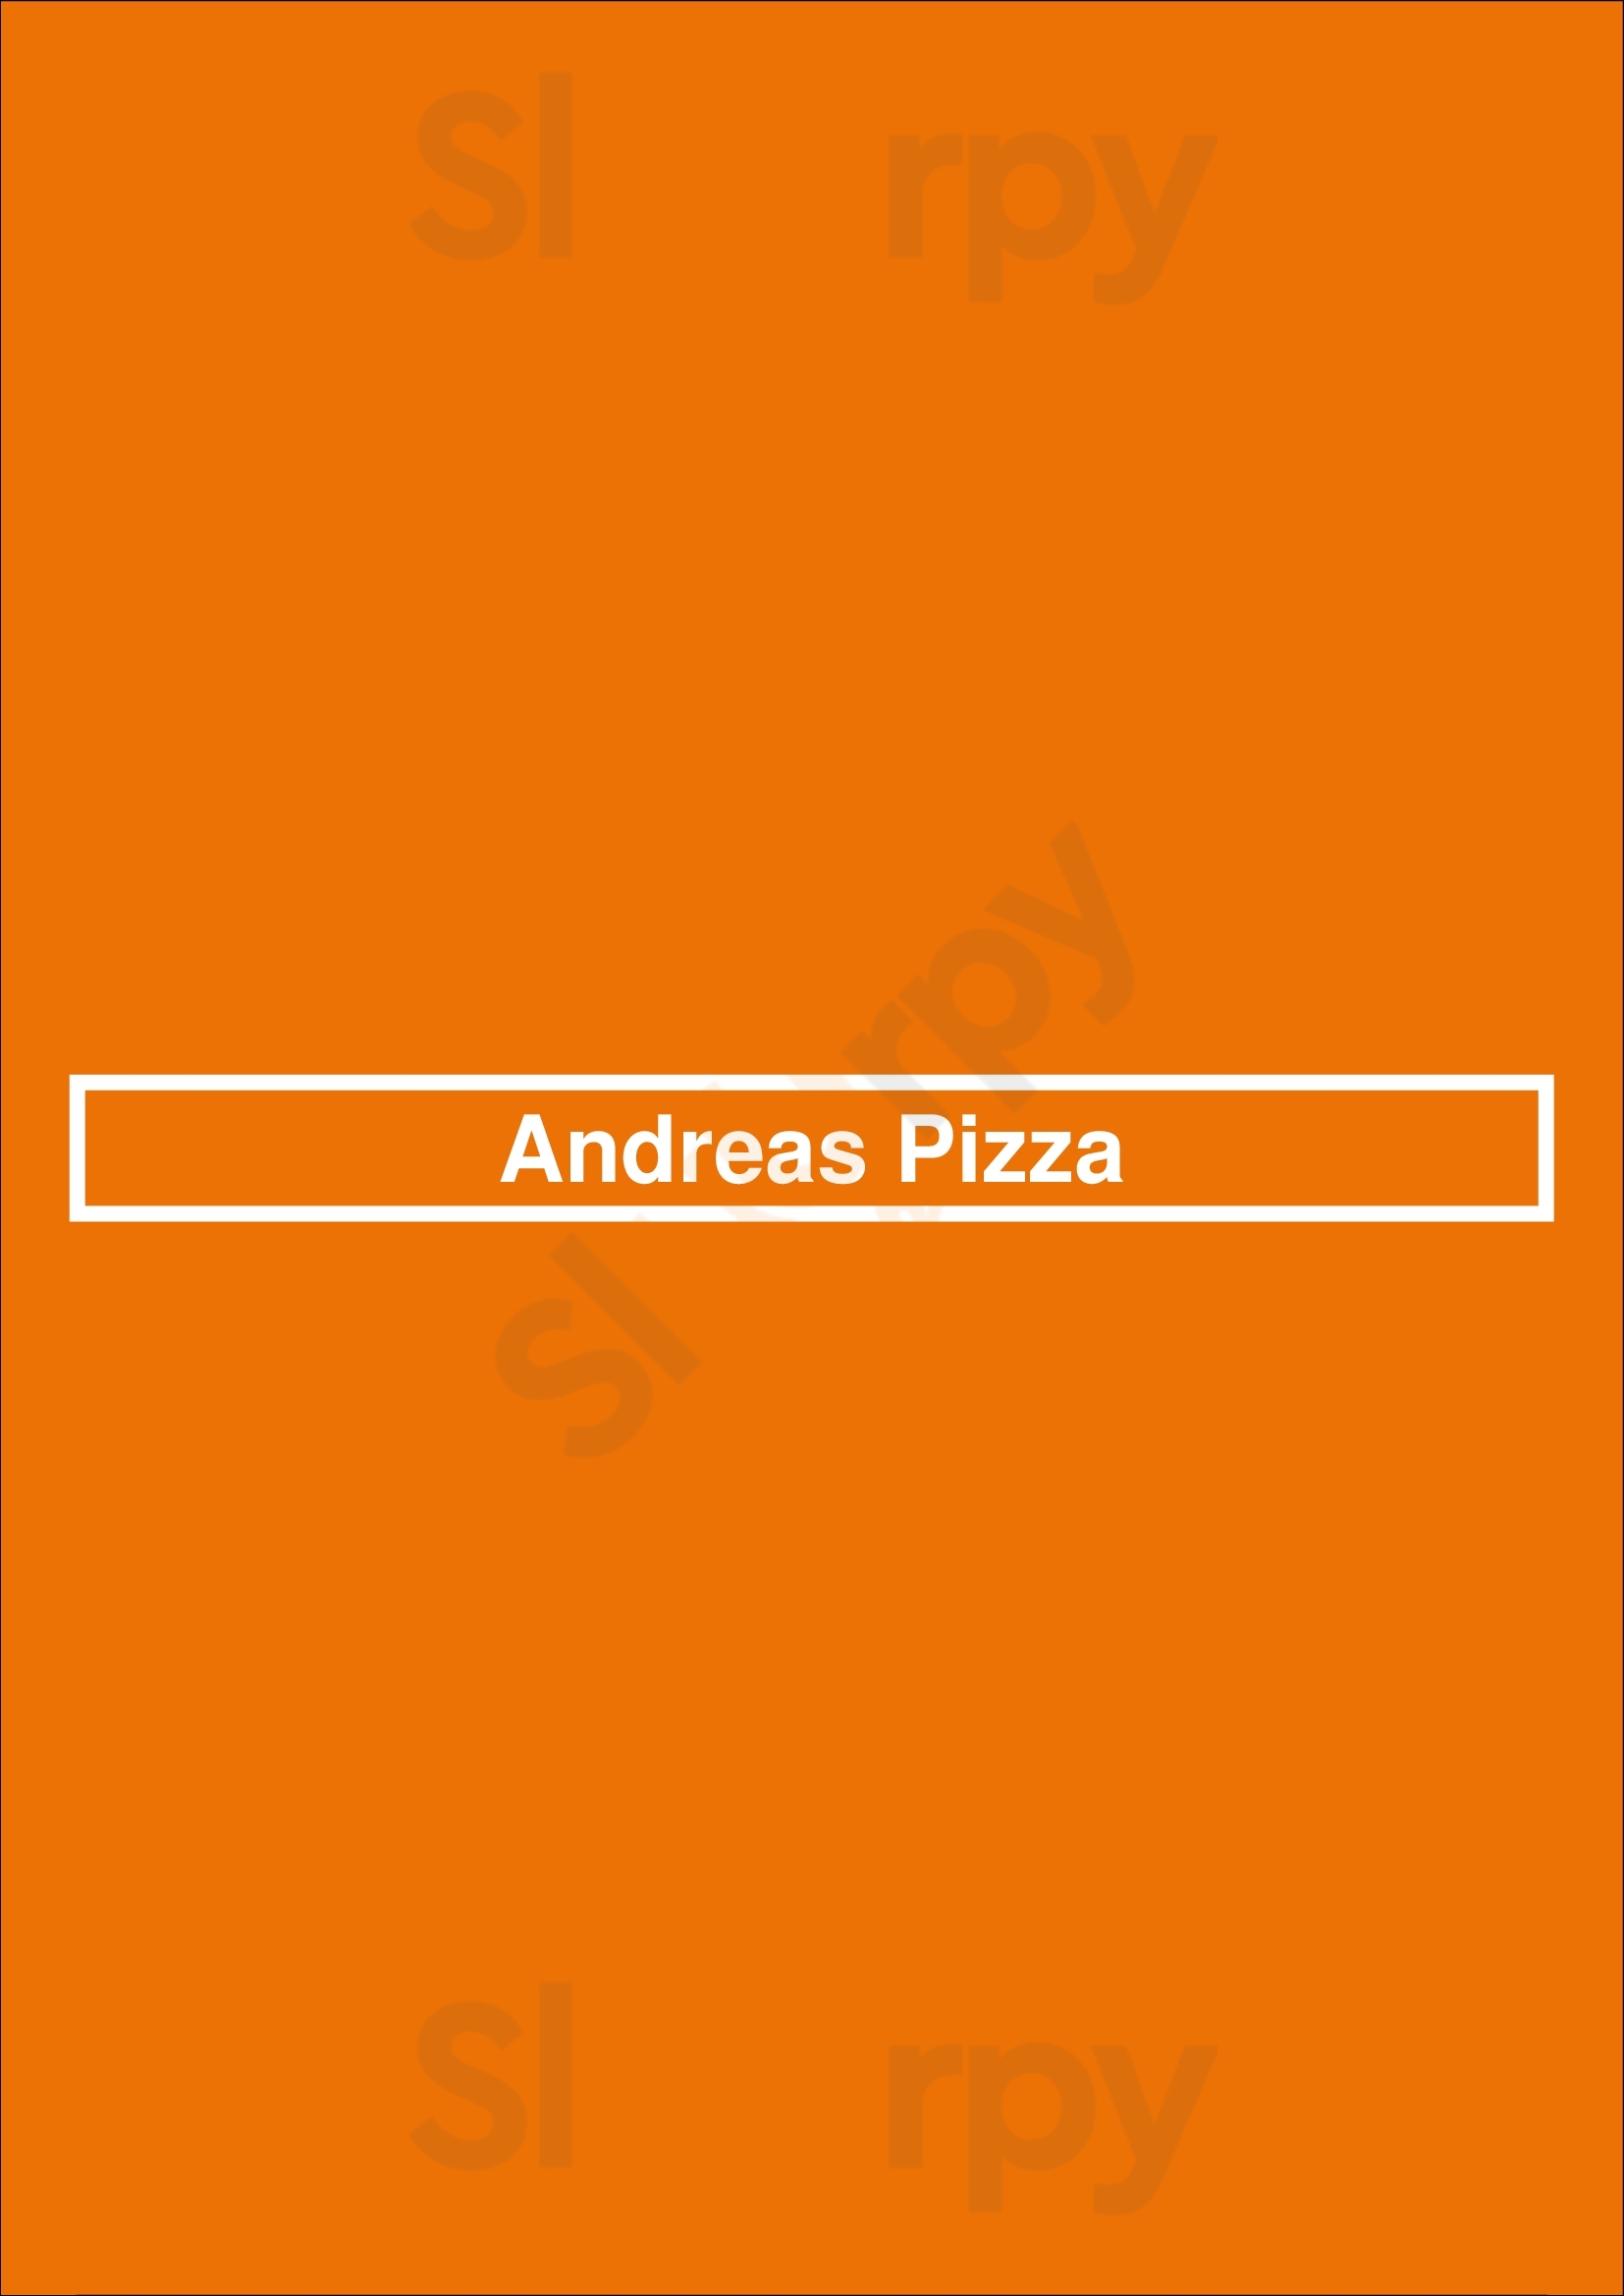 Andreas Pizza Bedford Menu - 1